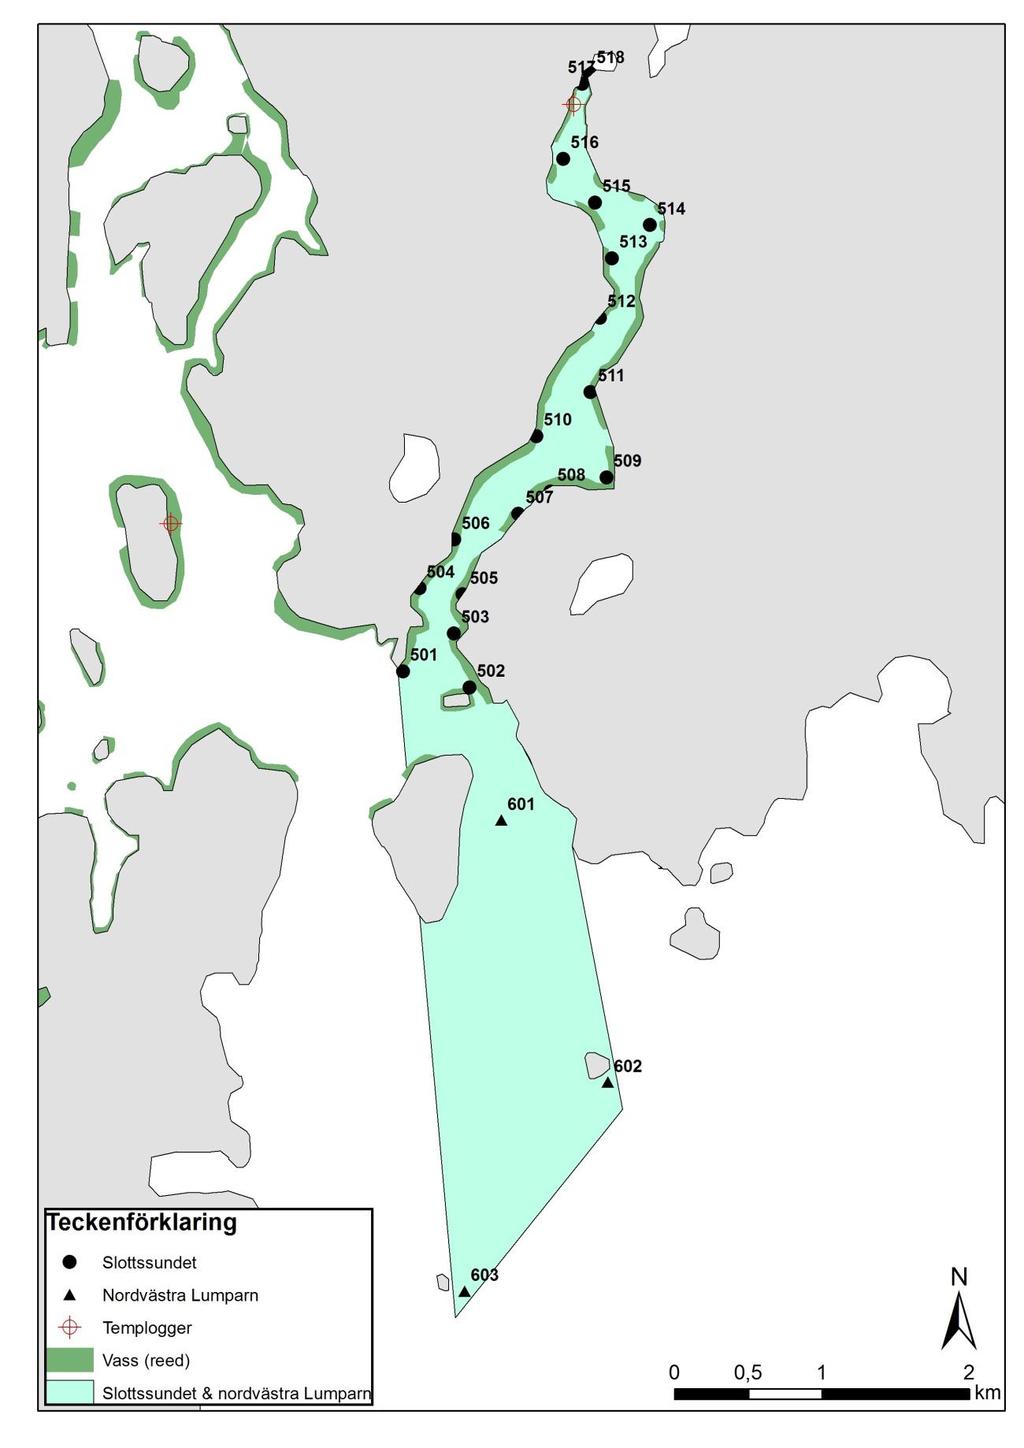 7 Figur 4. Provtagningspunkterna, vassutbredningen samt temploggerns placering i Slottssundet (501-518) och nordvästra Lumparn (601-603). Det färglagda området anger provtagningsområdets gränser.